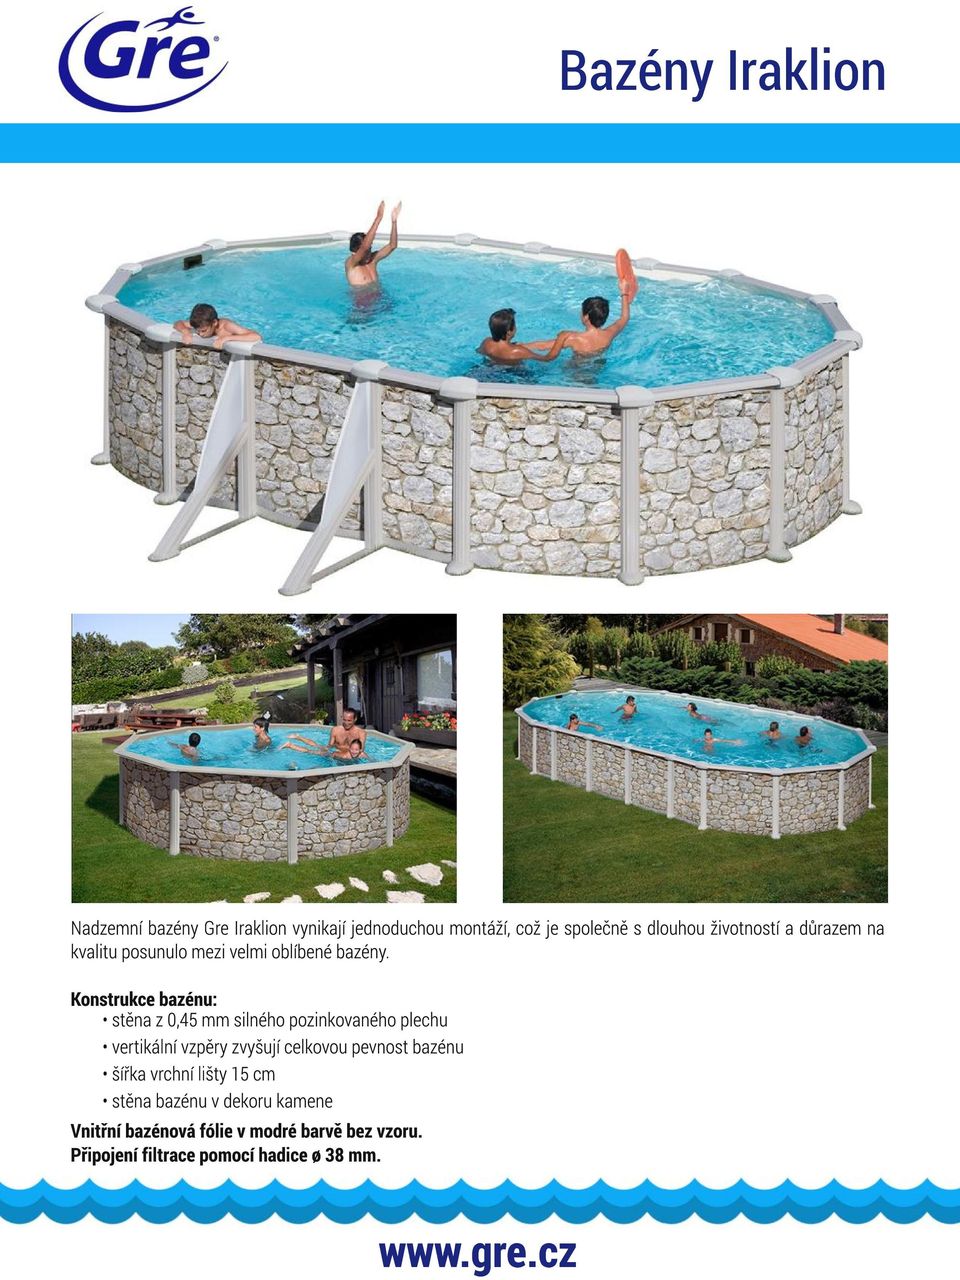 Konstrukce bazénu: stěna z 0,45 mm silného pozinkovaného plechu vertikální vzpěry zvyšují celkovou pevnost